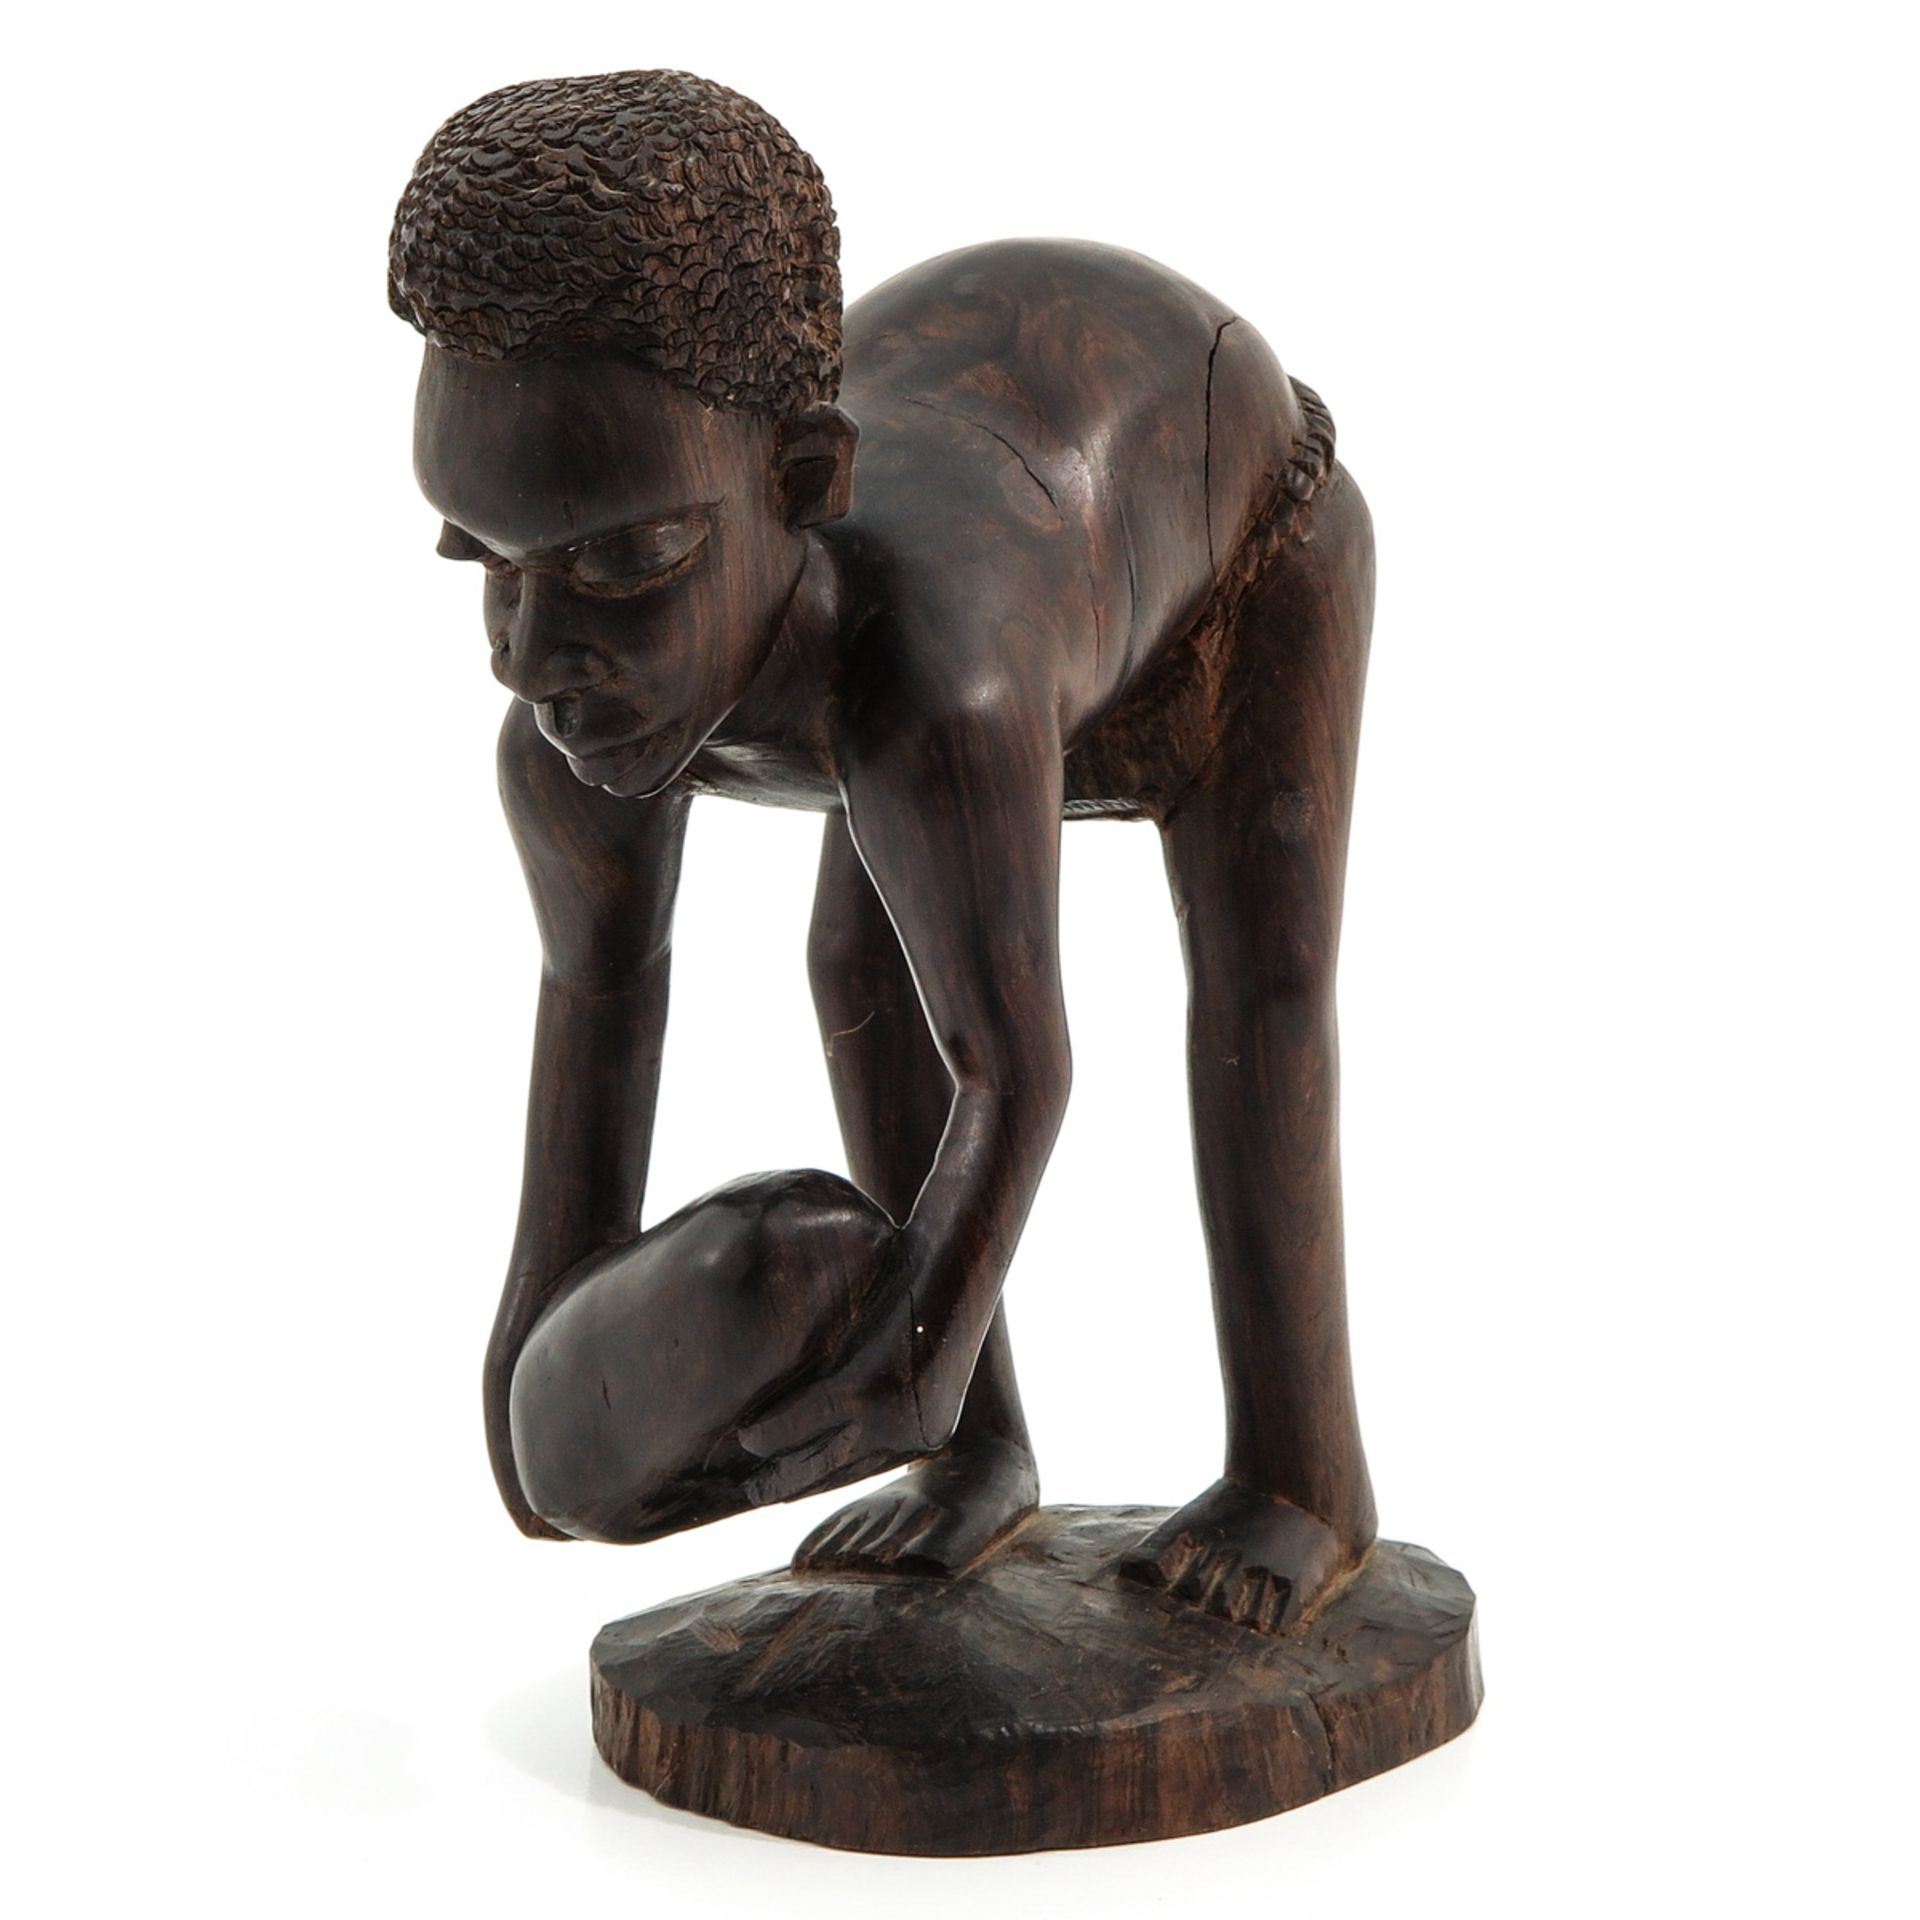 An African Sculpture